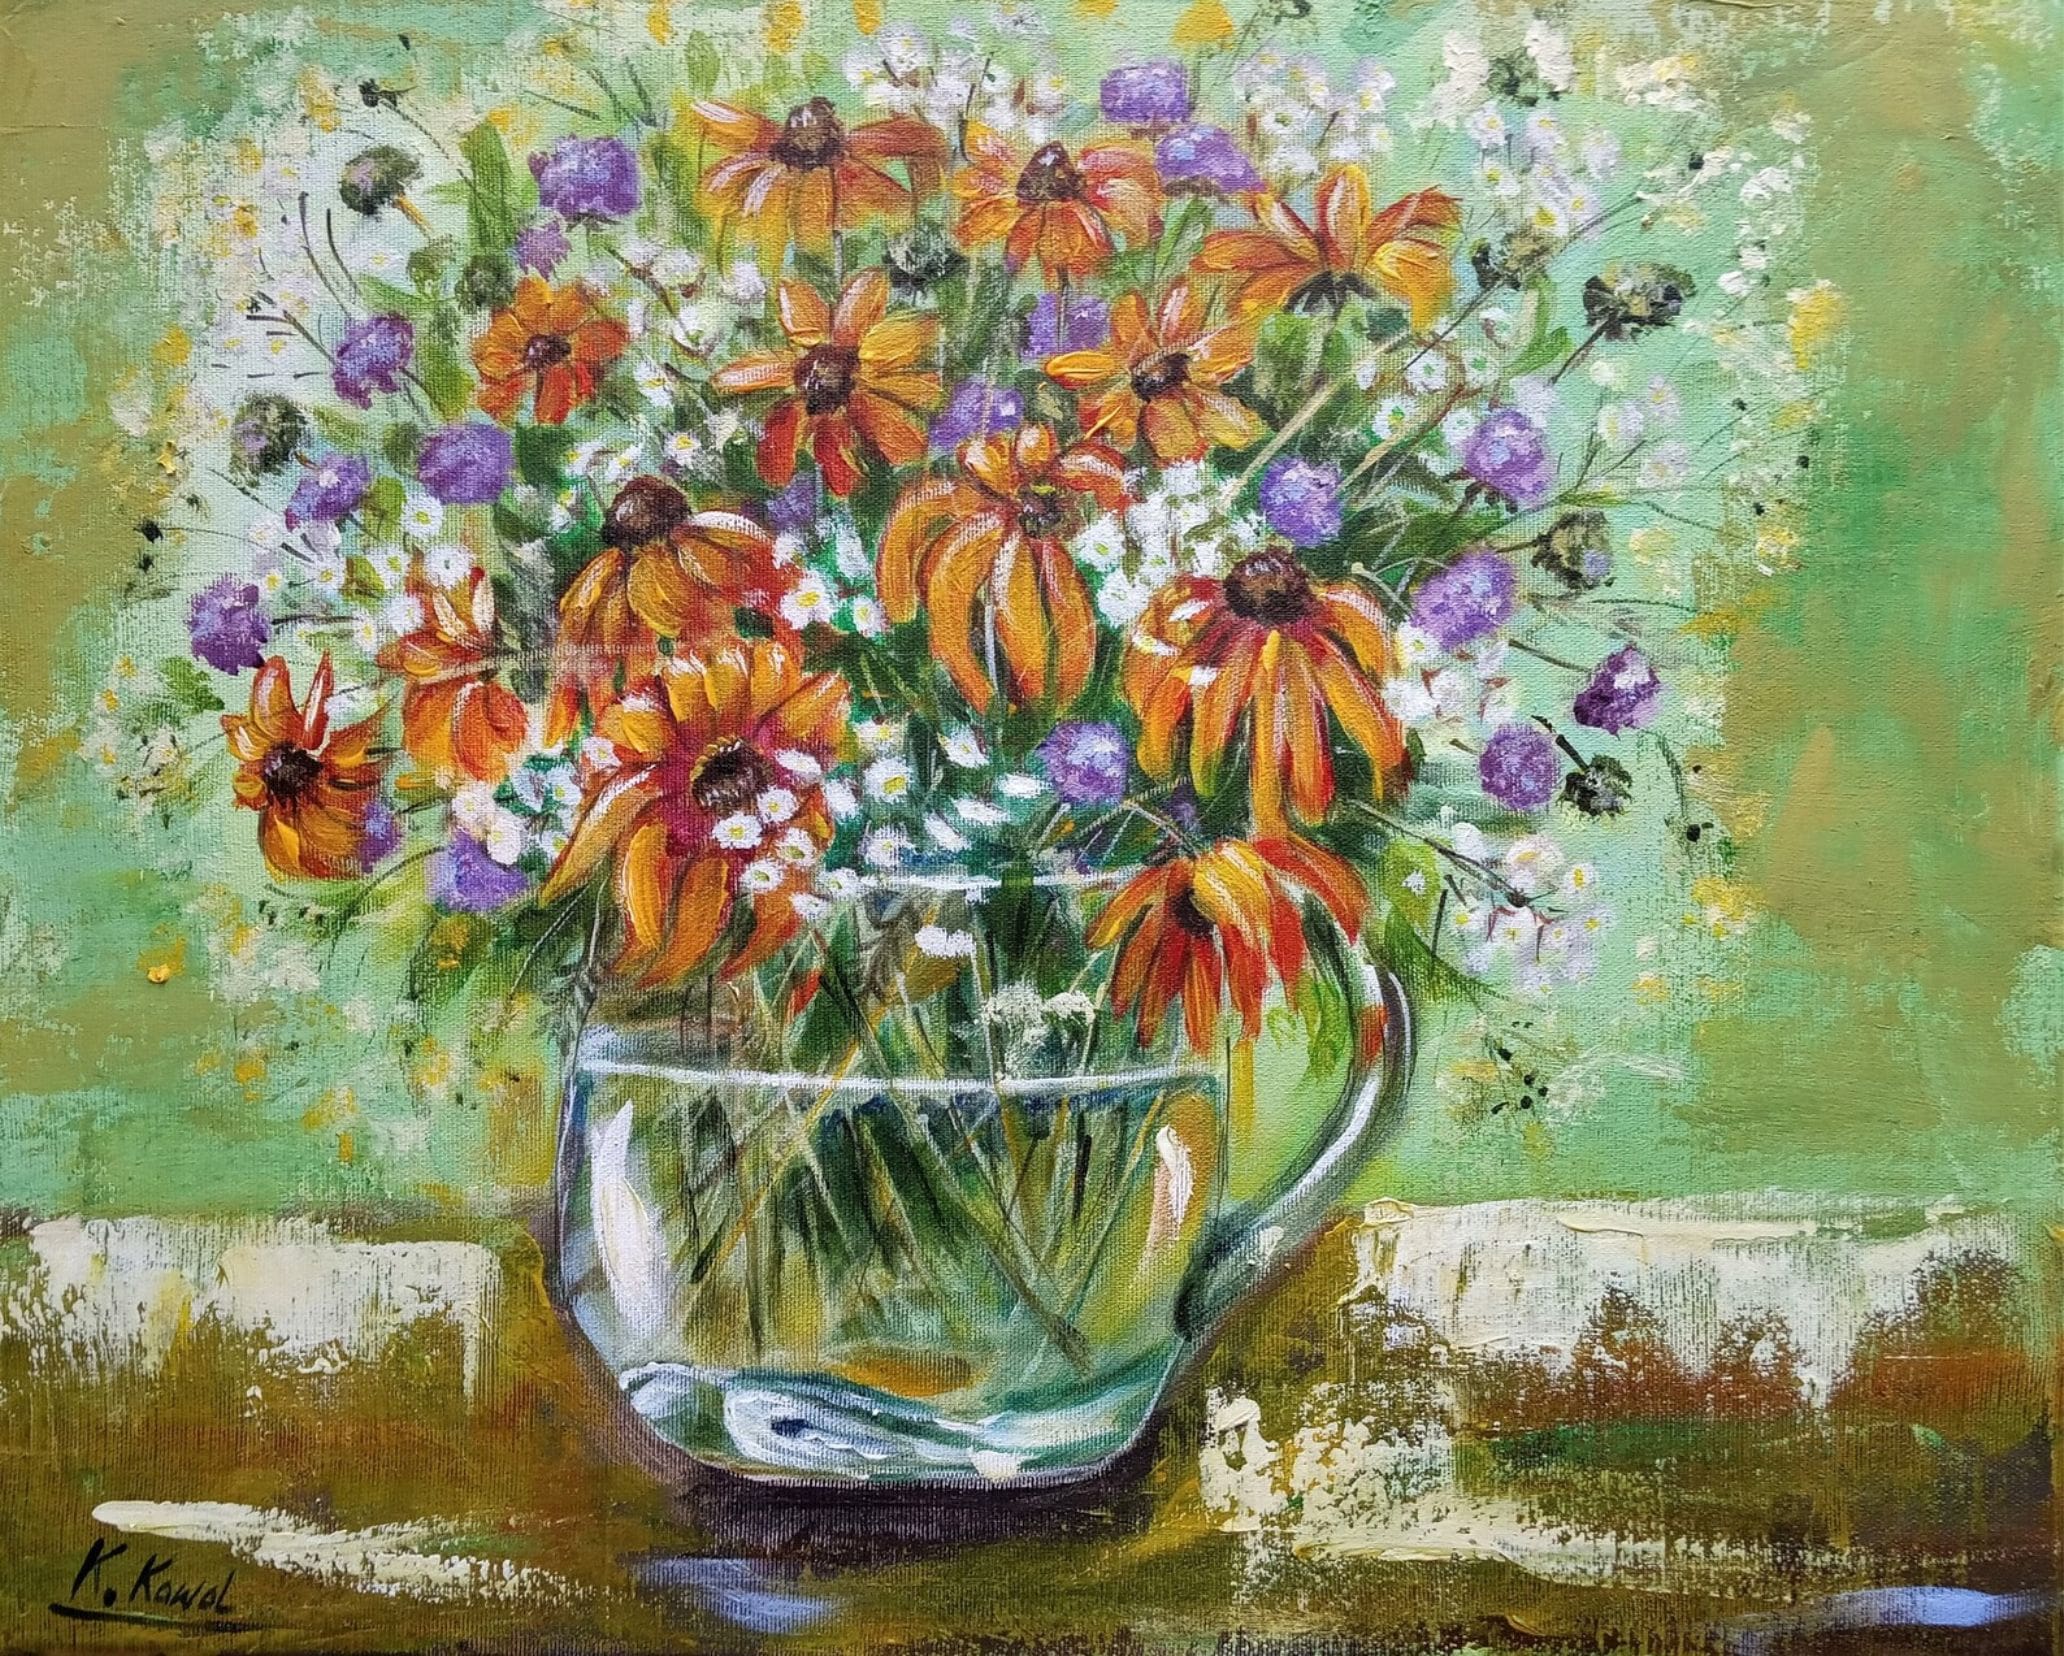 Obraz ze szklanym wazonem pełnym kolorowych kwiatów